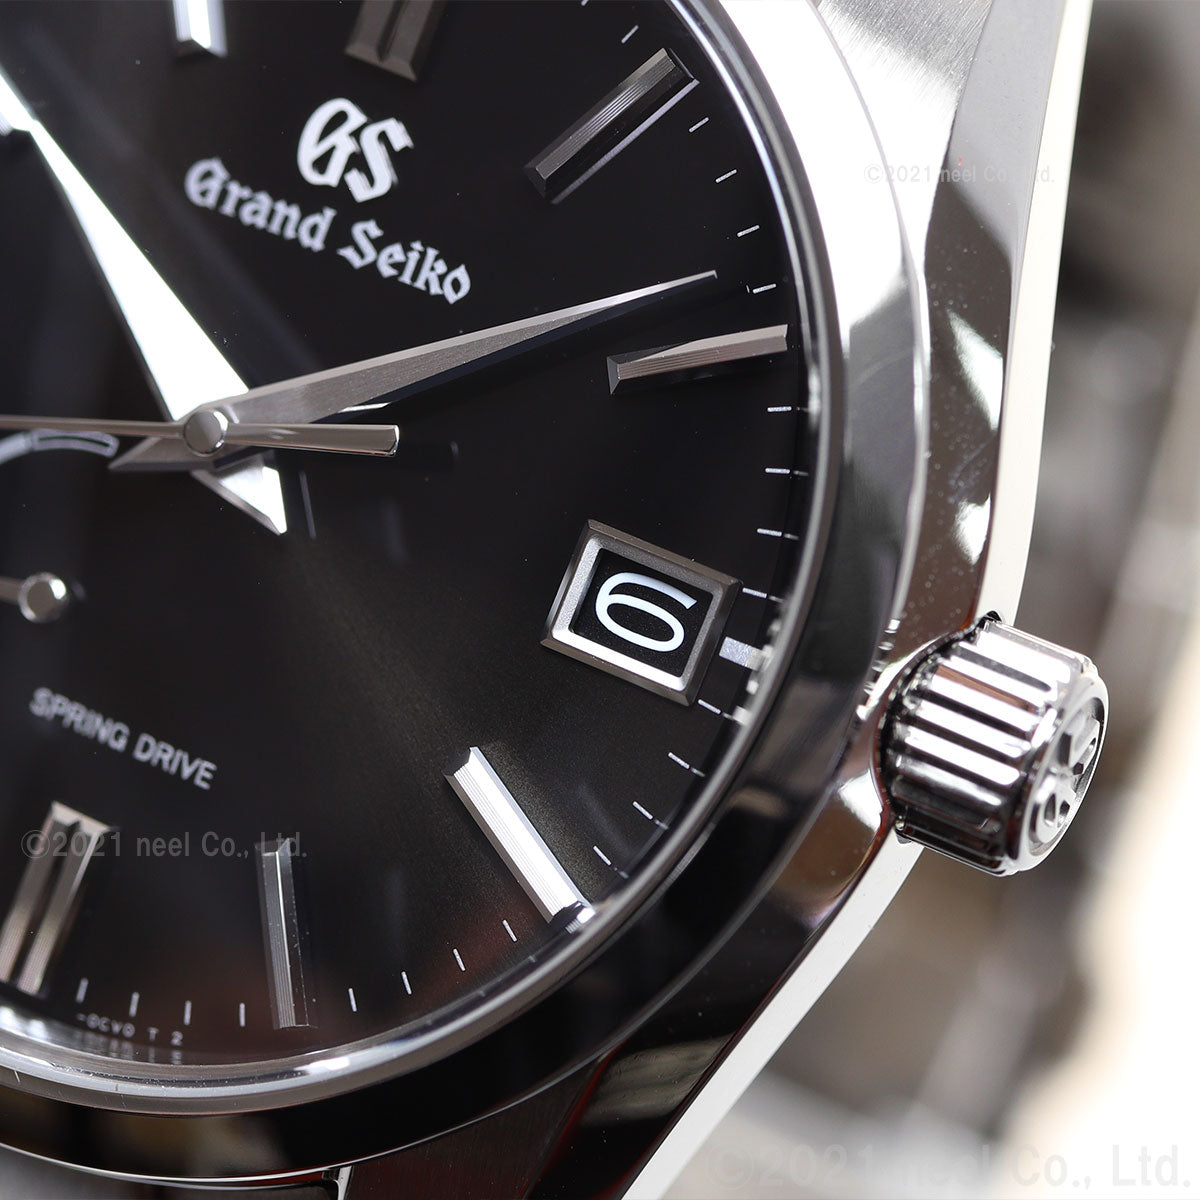 グランドセイコー Grand Seiko SBGA467 ヘリテージコレクション 自動巻 スプリングドライブ 9R65 メンズ 腕時計 日本製 時計 ブラック【36回無金利ローン】